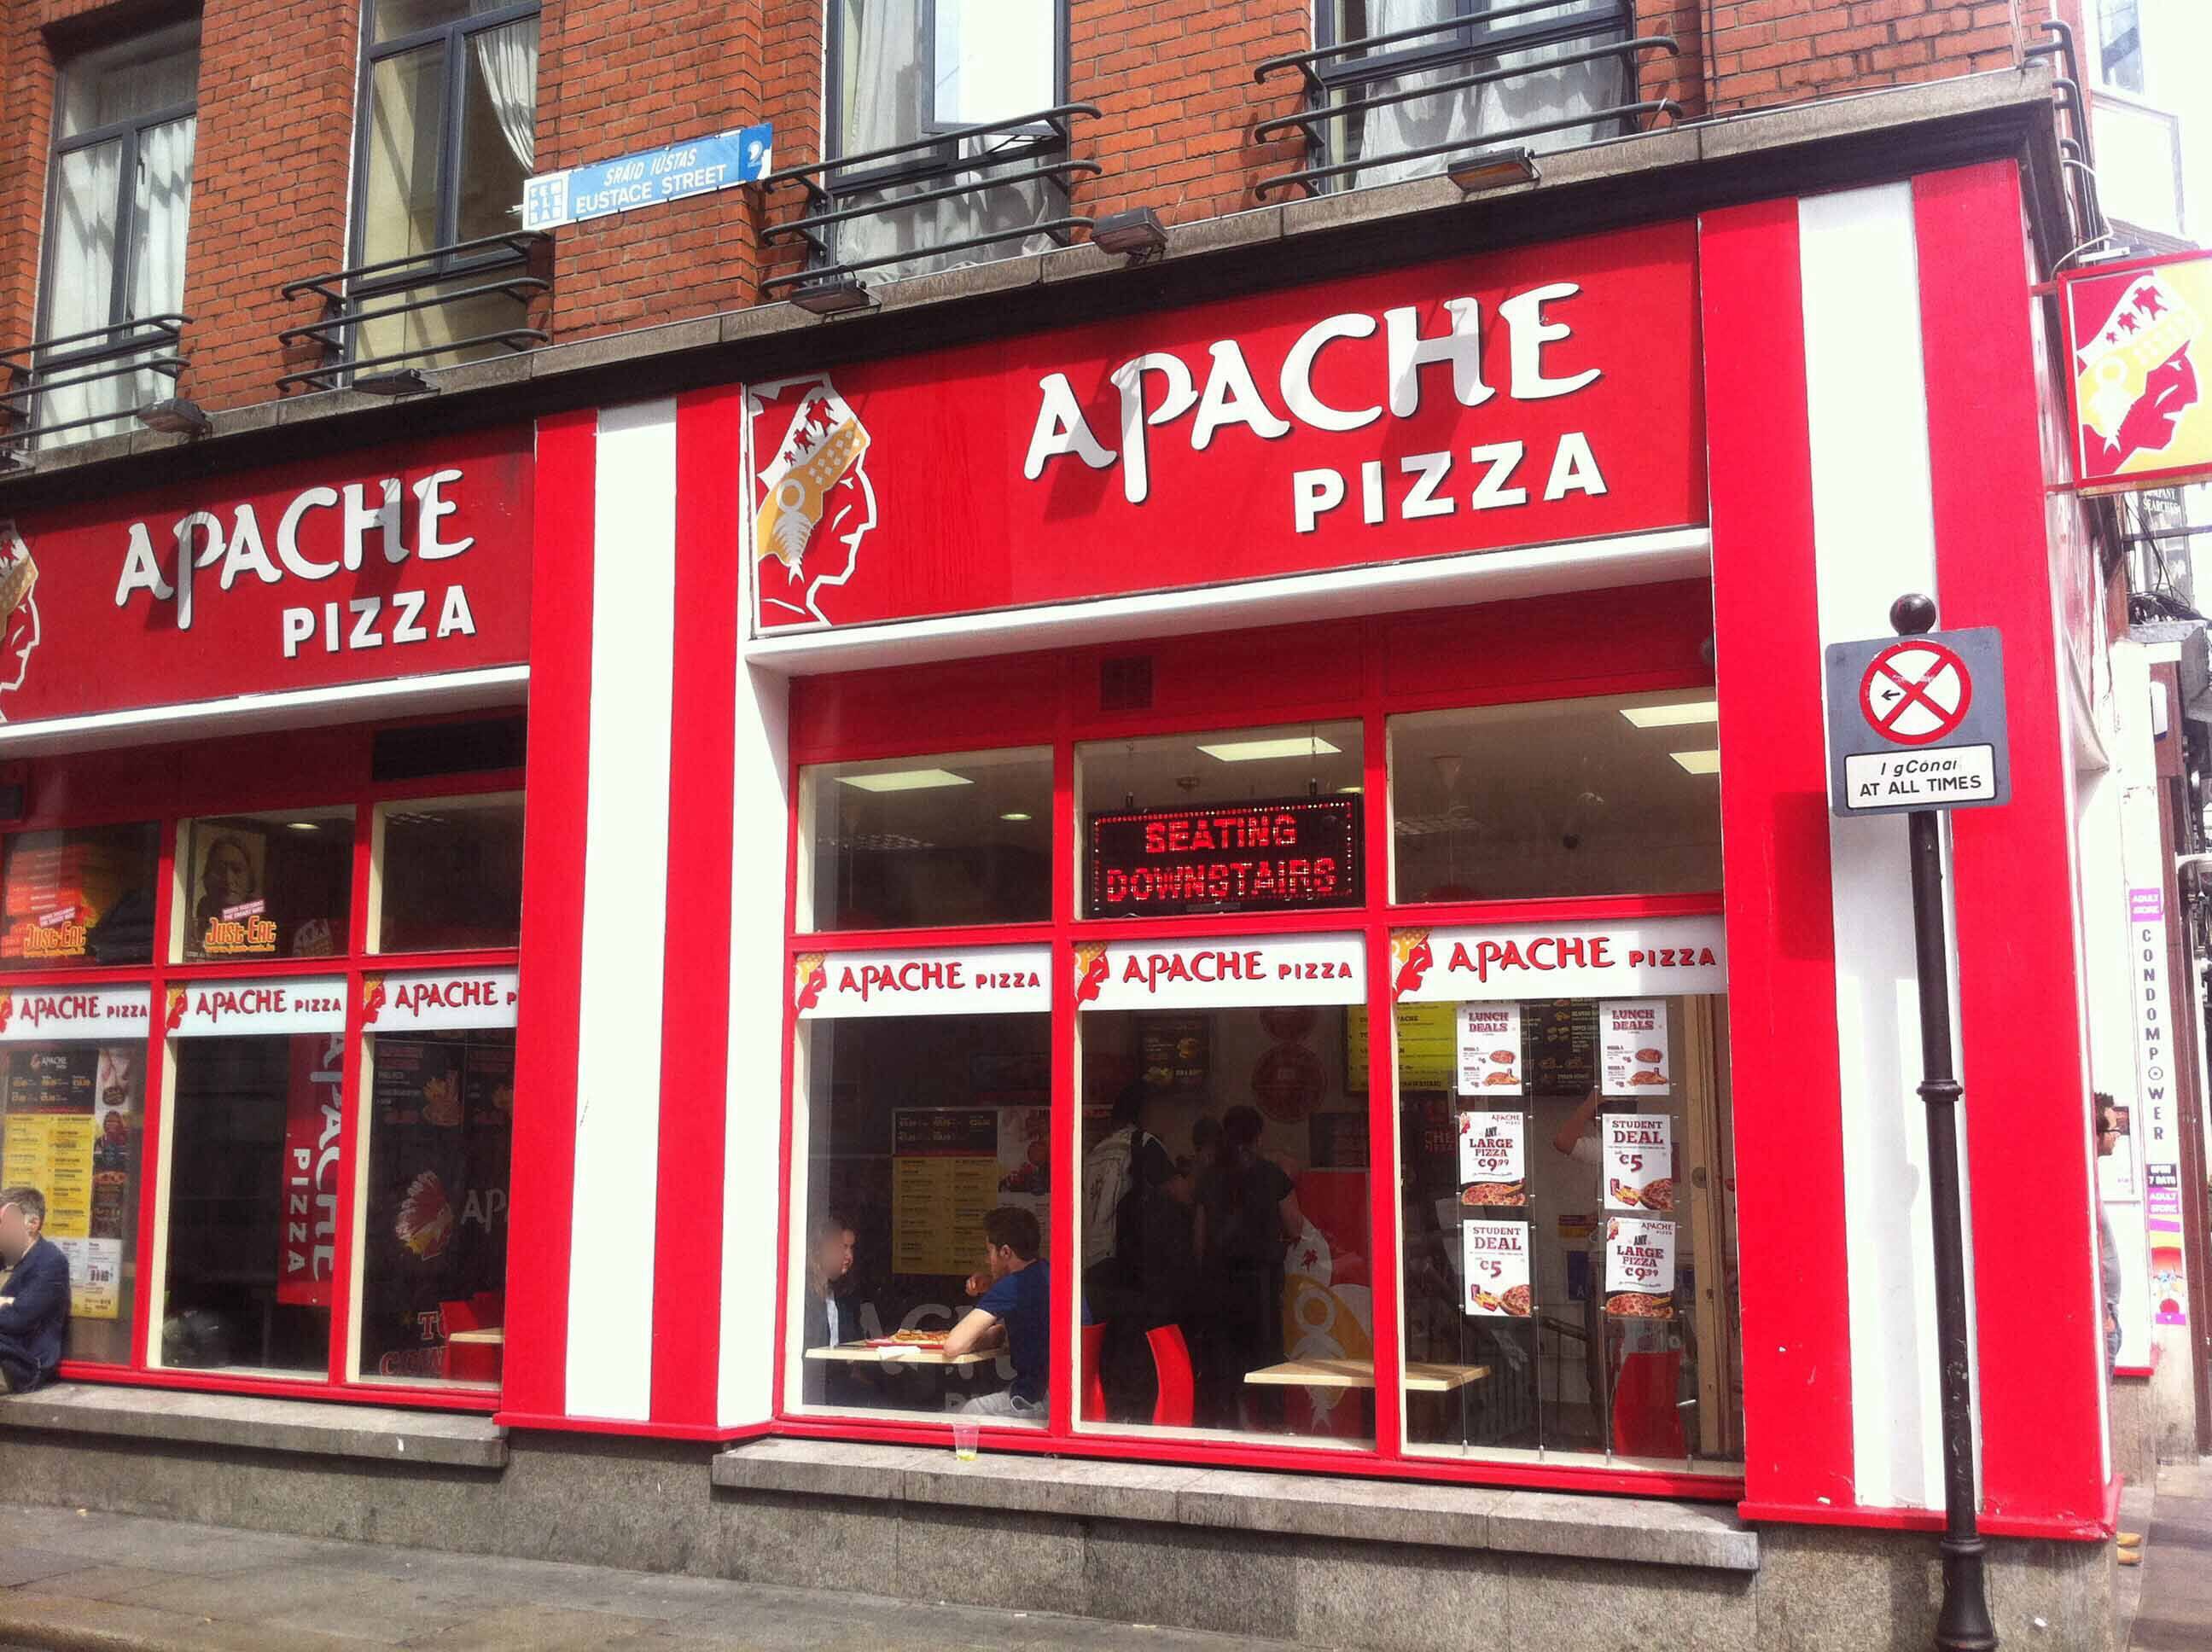 Apache Pizza